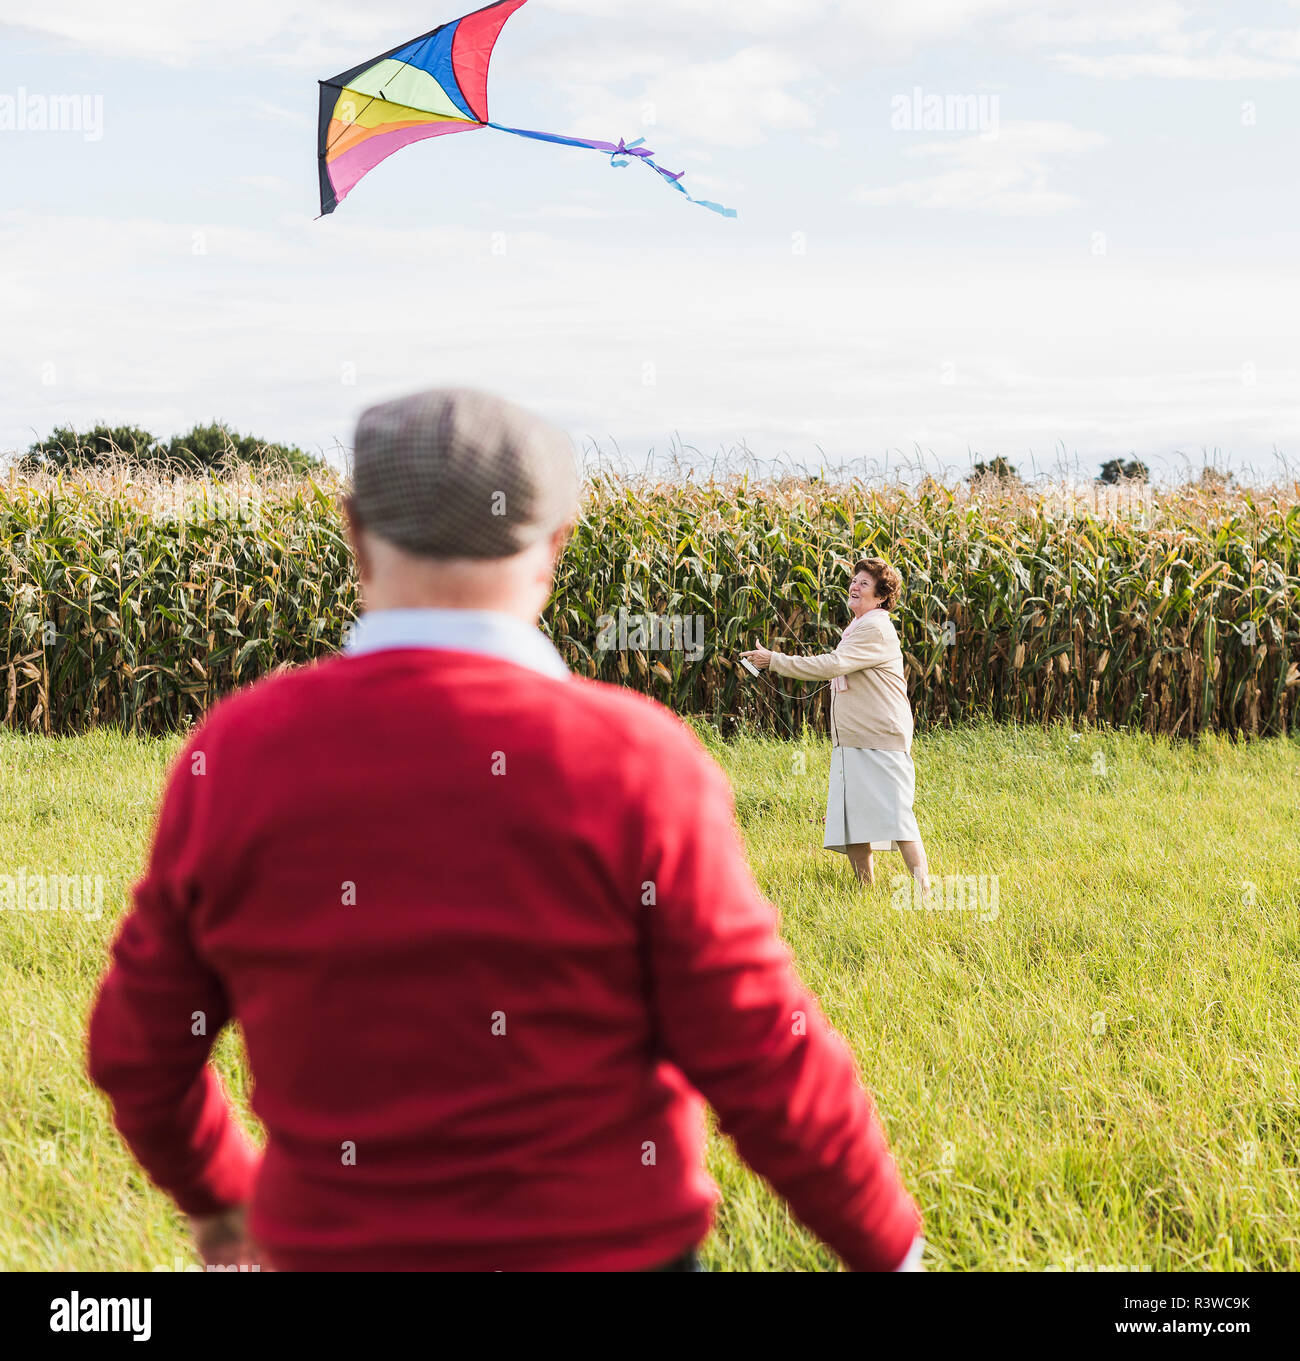 Senior couple flying kite in rural landscape Stock Photo